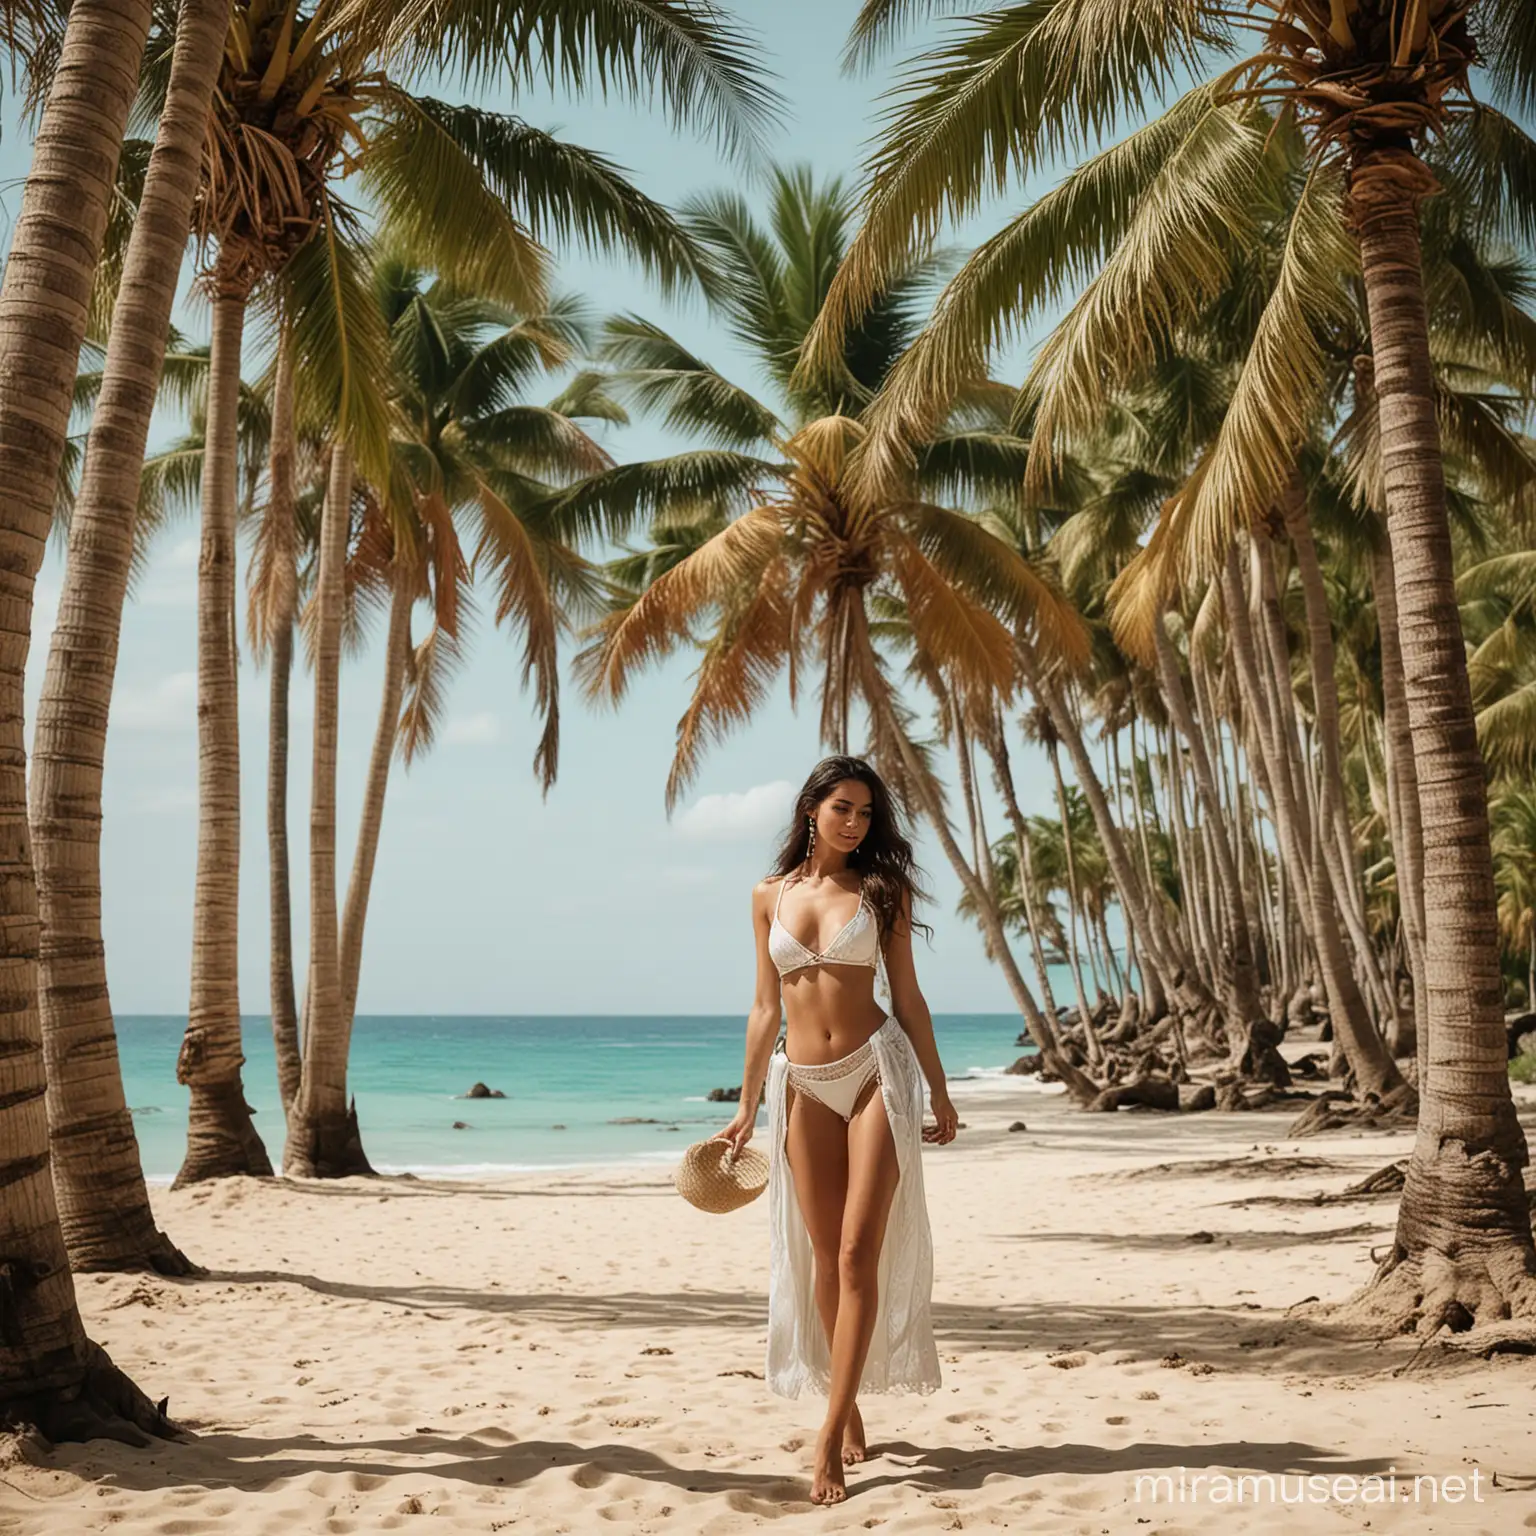 Semana Santa
Esmeralda 24
crea una imagen de palmeras y bello trópico bellas mujeres y playa